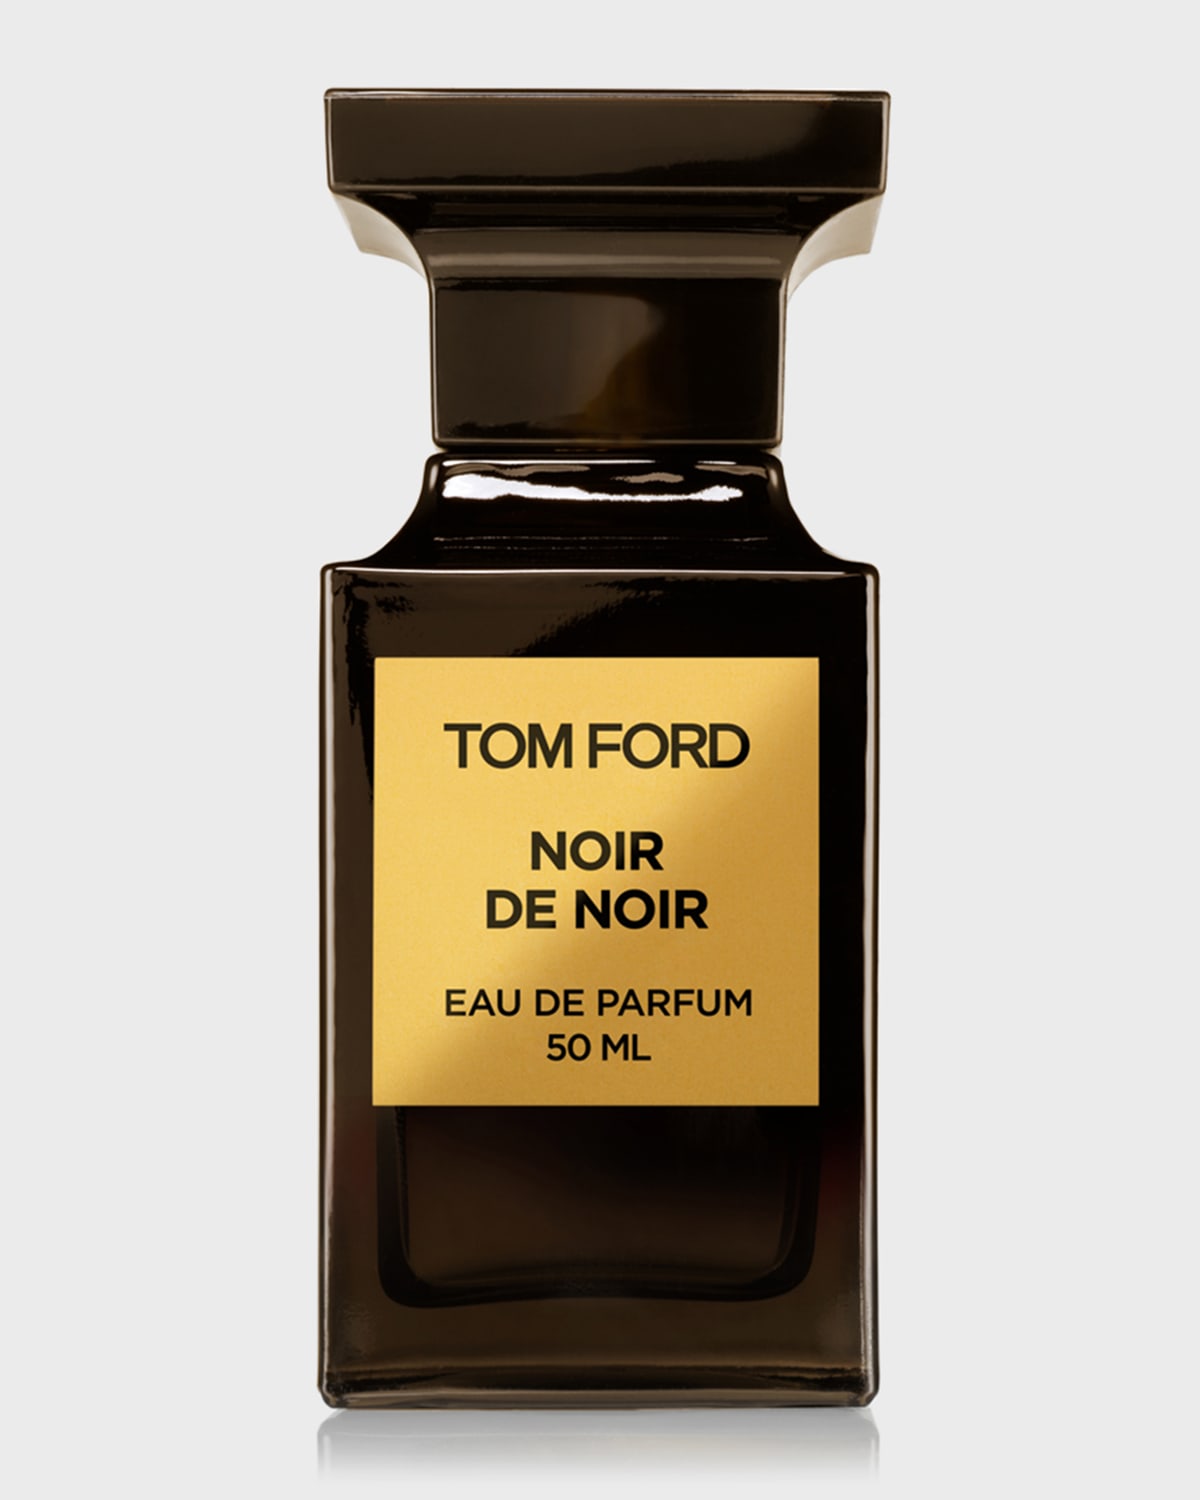 Noir de Noir Eau de Parfum Fragrance, 1.7 oz